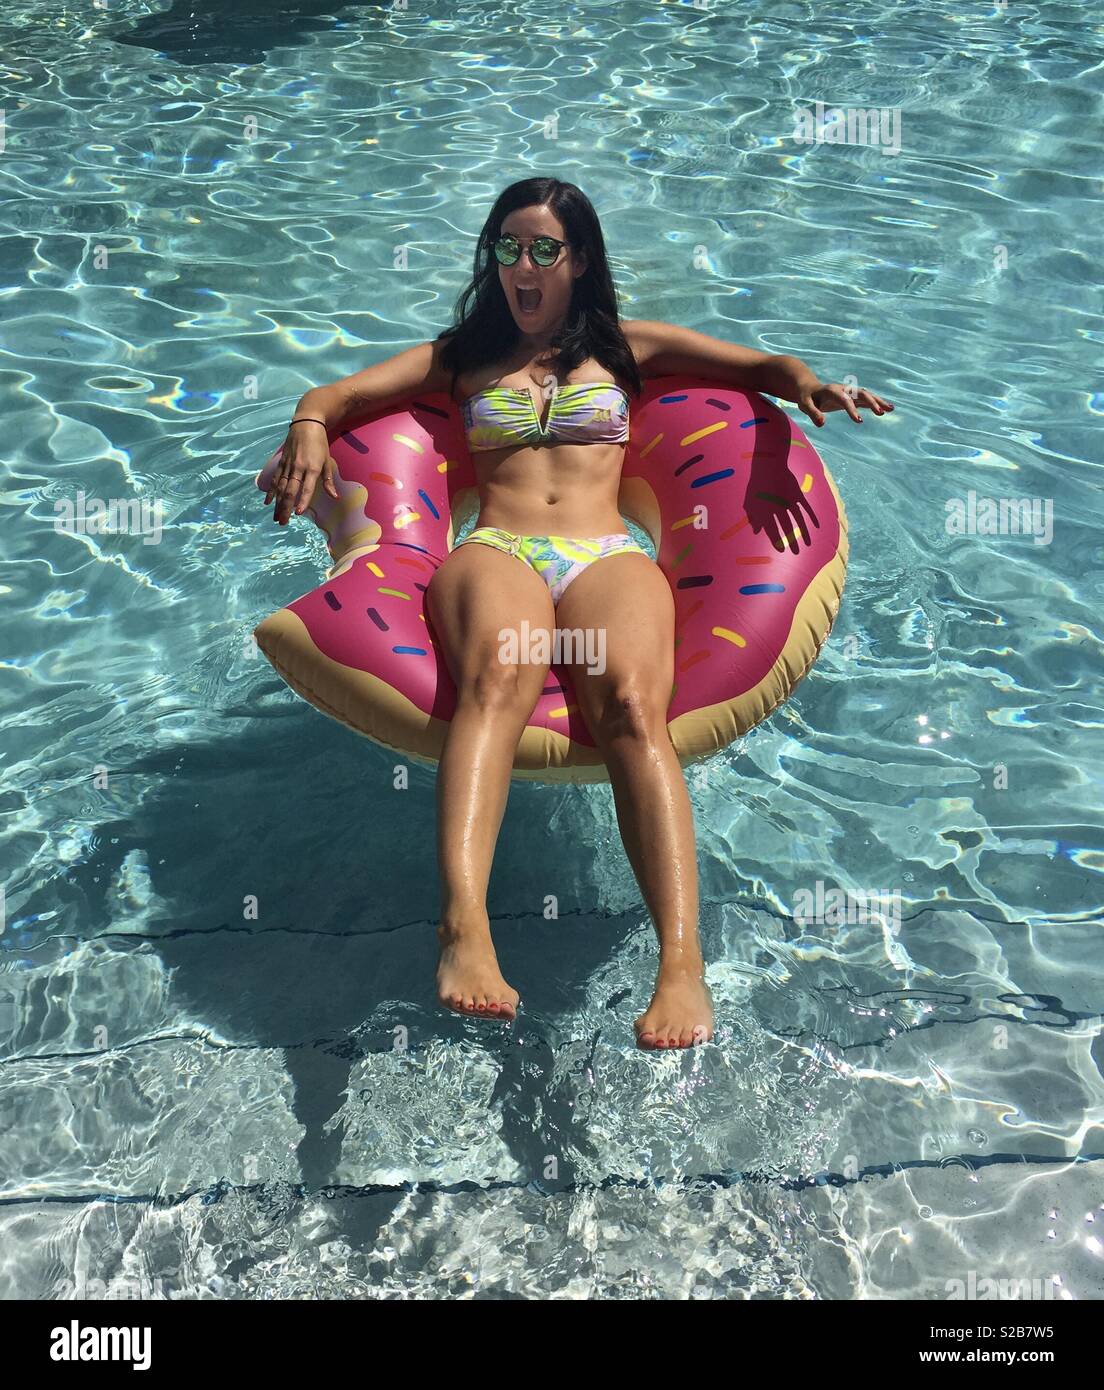 Schöne junge Frau ins kalte Wasser springen auf Donut pool Float Stockfoto